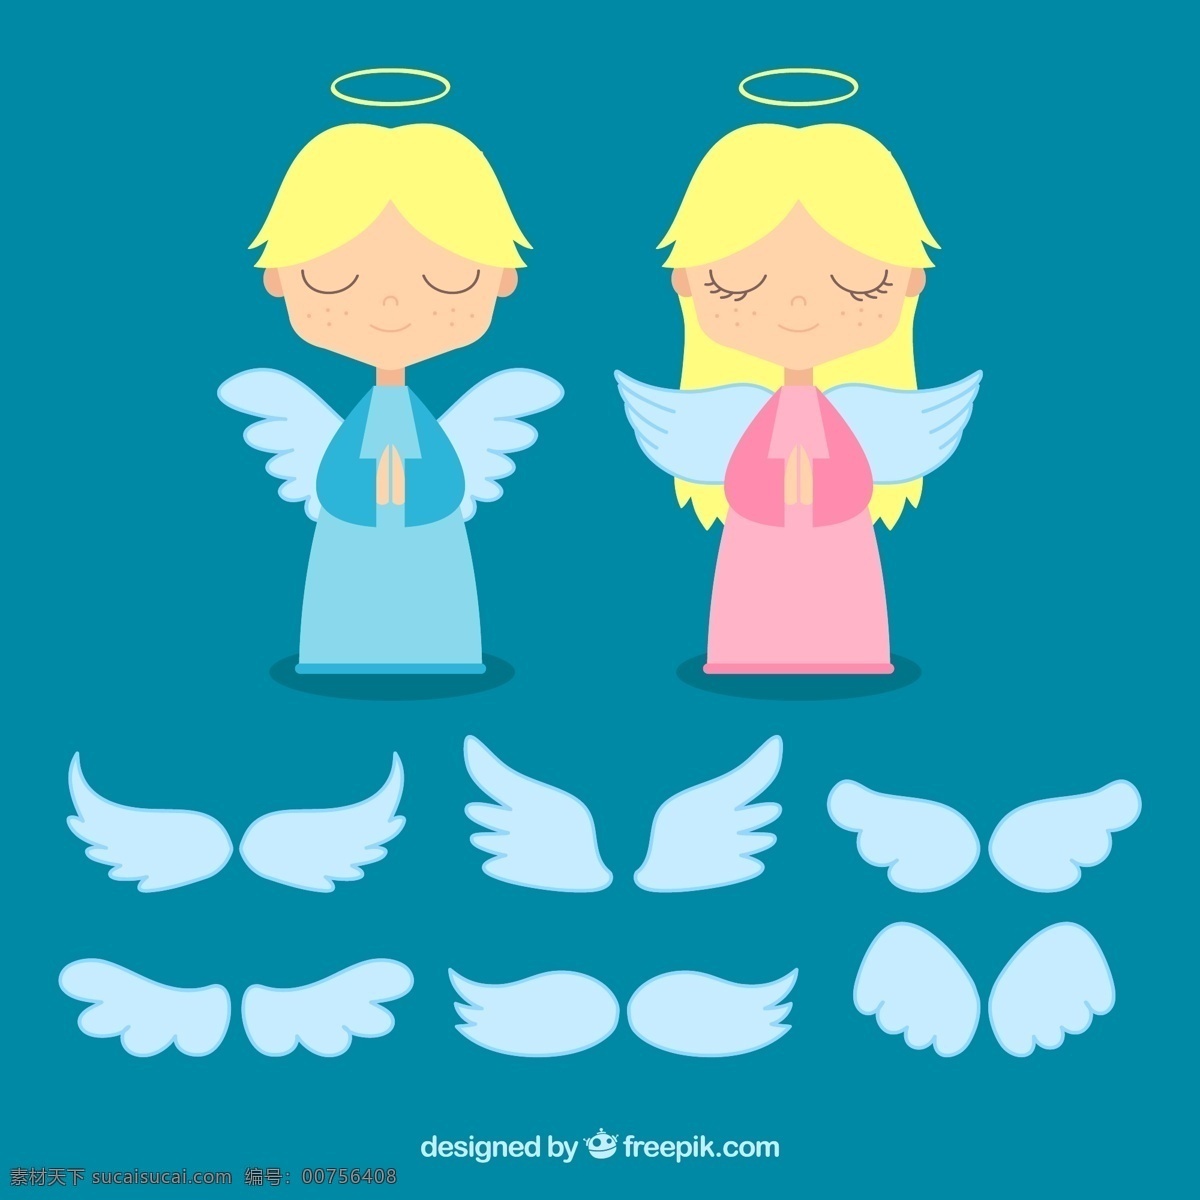 天使和翅膀 天使 翅膀 矢量图 ai格式